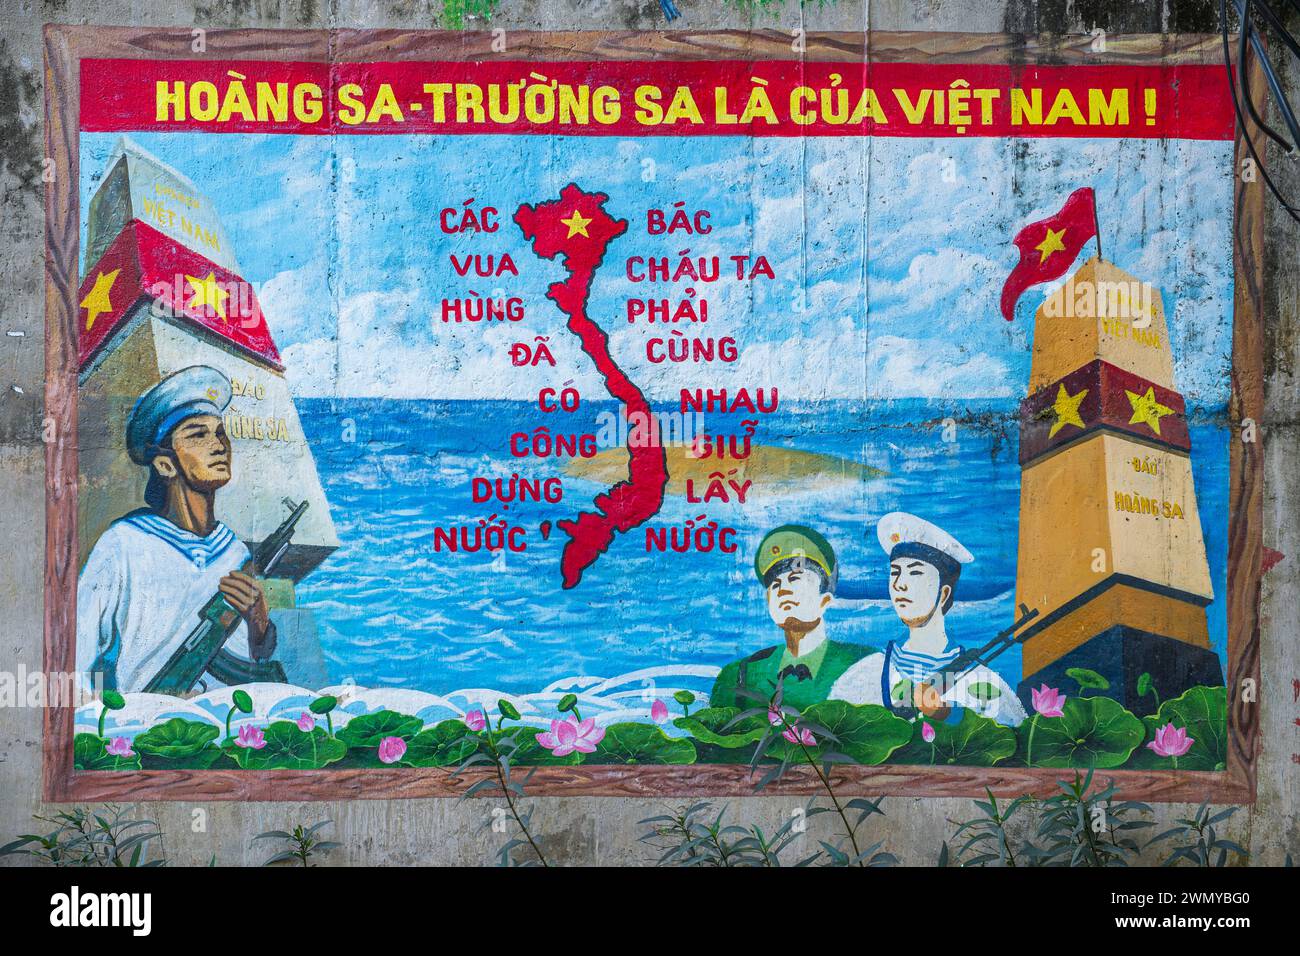 Vietnam, Mekong Delta, Cai Rang Bezirk, Gemälde, in dem behauptet wird, dass die Hoang Sa und Truong Sa Inseln (Pattle und Spratly Inseln) zu Vietnam gehören Stockfoto